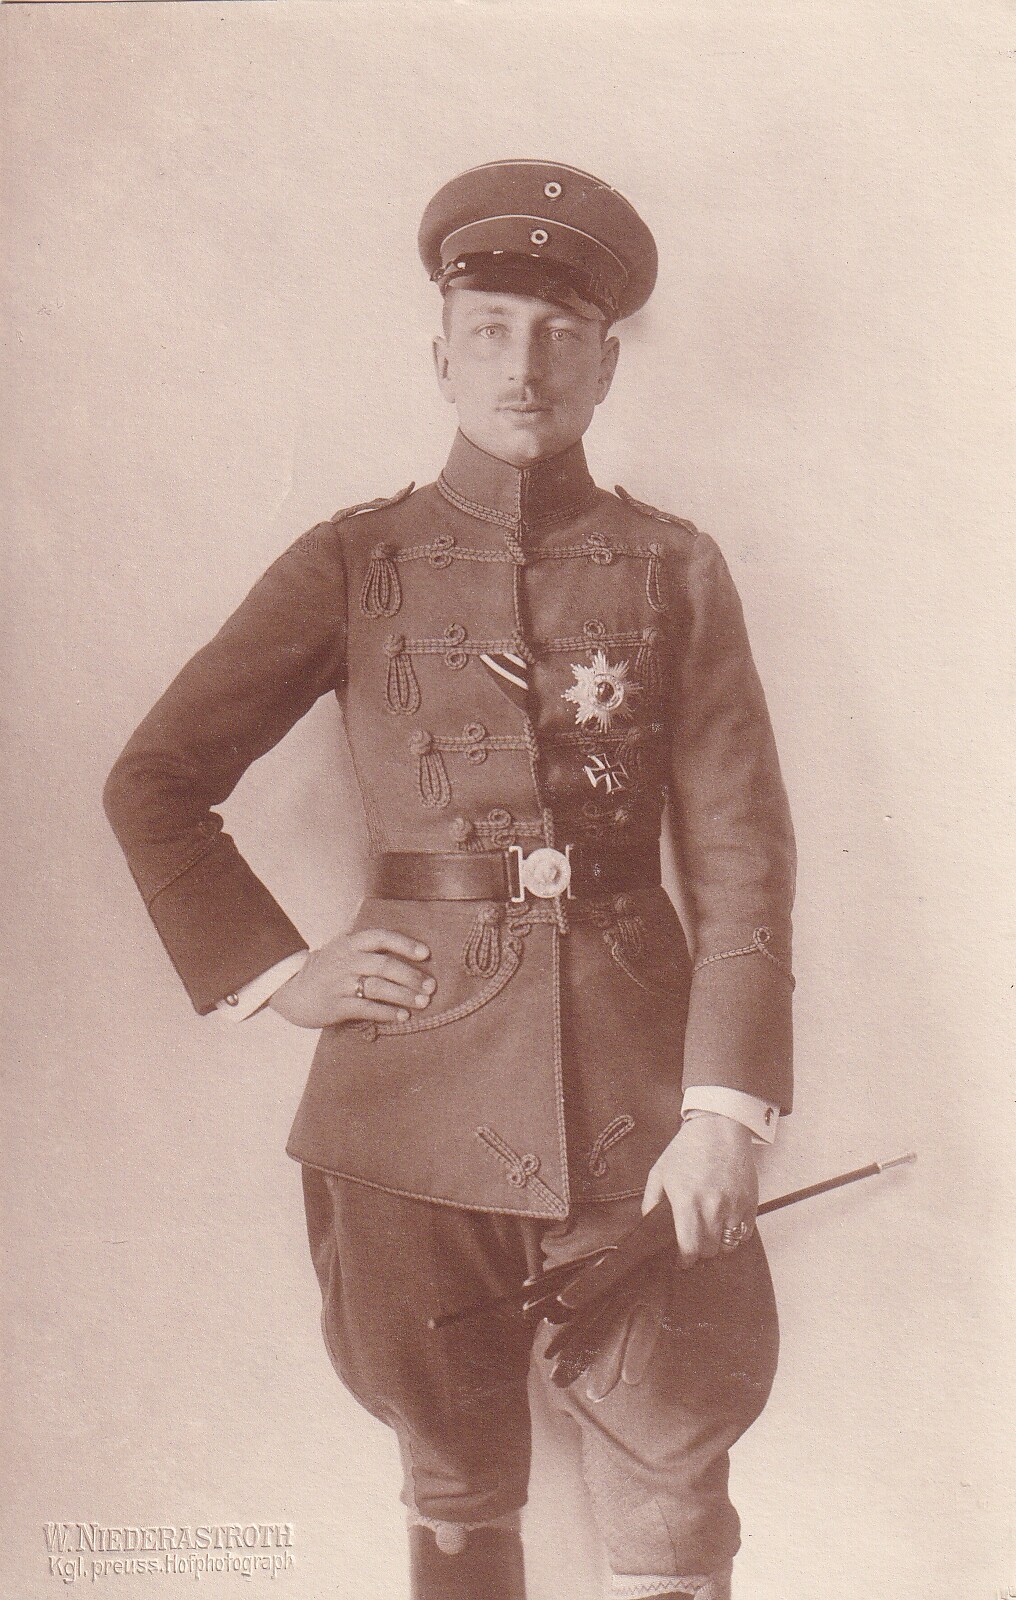 Bildpostkarte mit Foto des Prinzen Joachim von Preußen, um 1916 (Schloß Wernigerode GmbH RR-F)